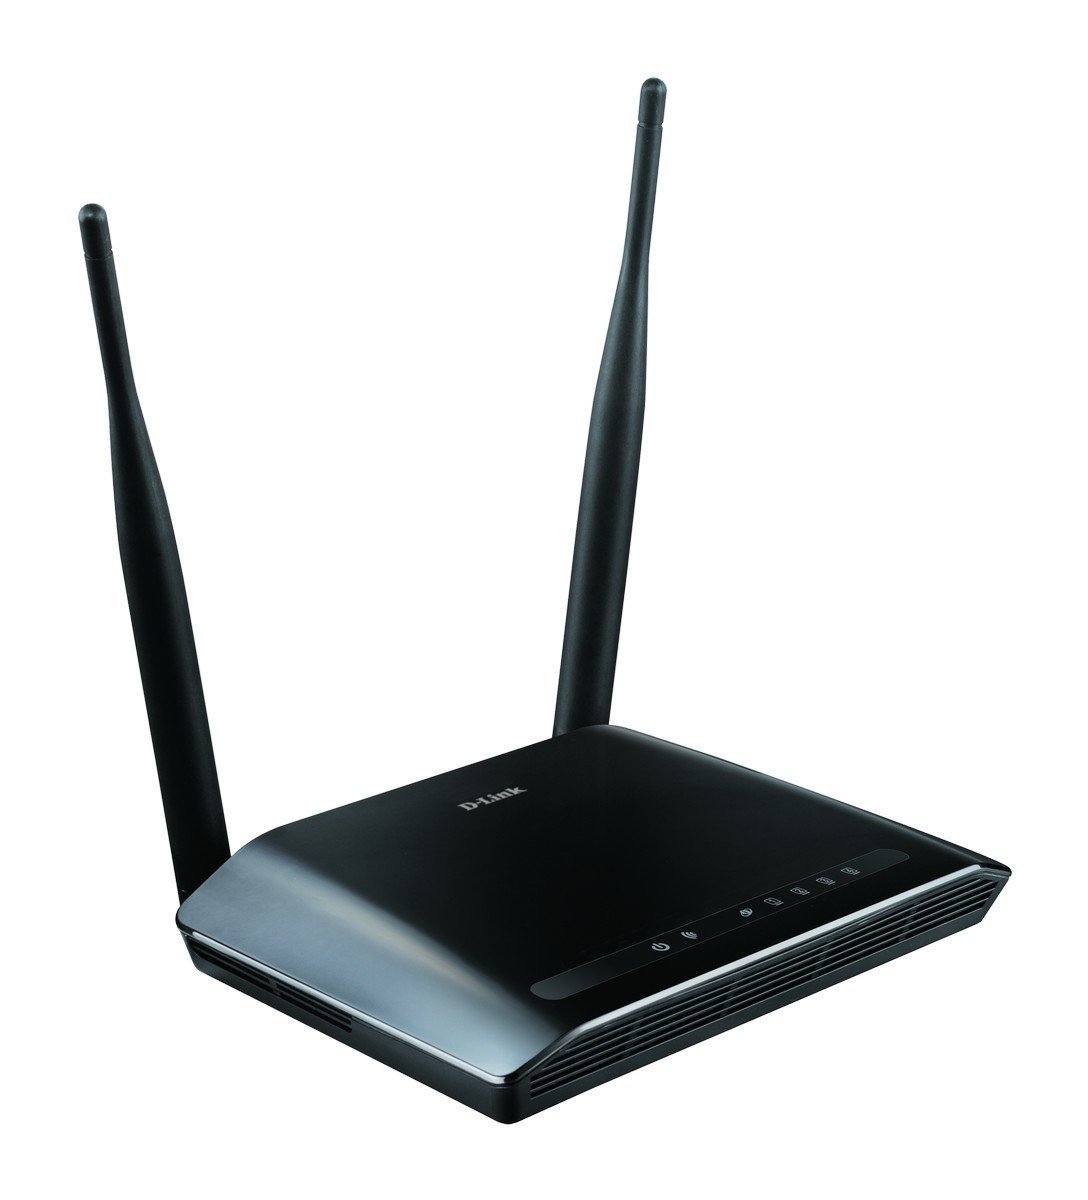 D Link Dir 615 Wireless N300 Router Black Not A Modem Buy